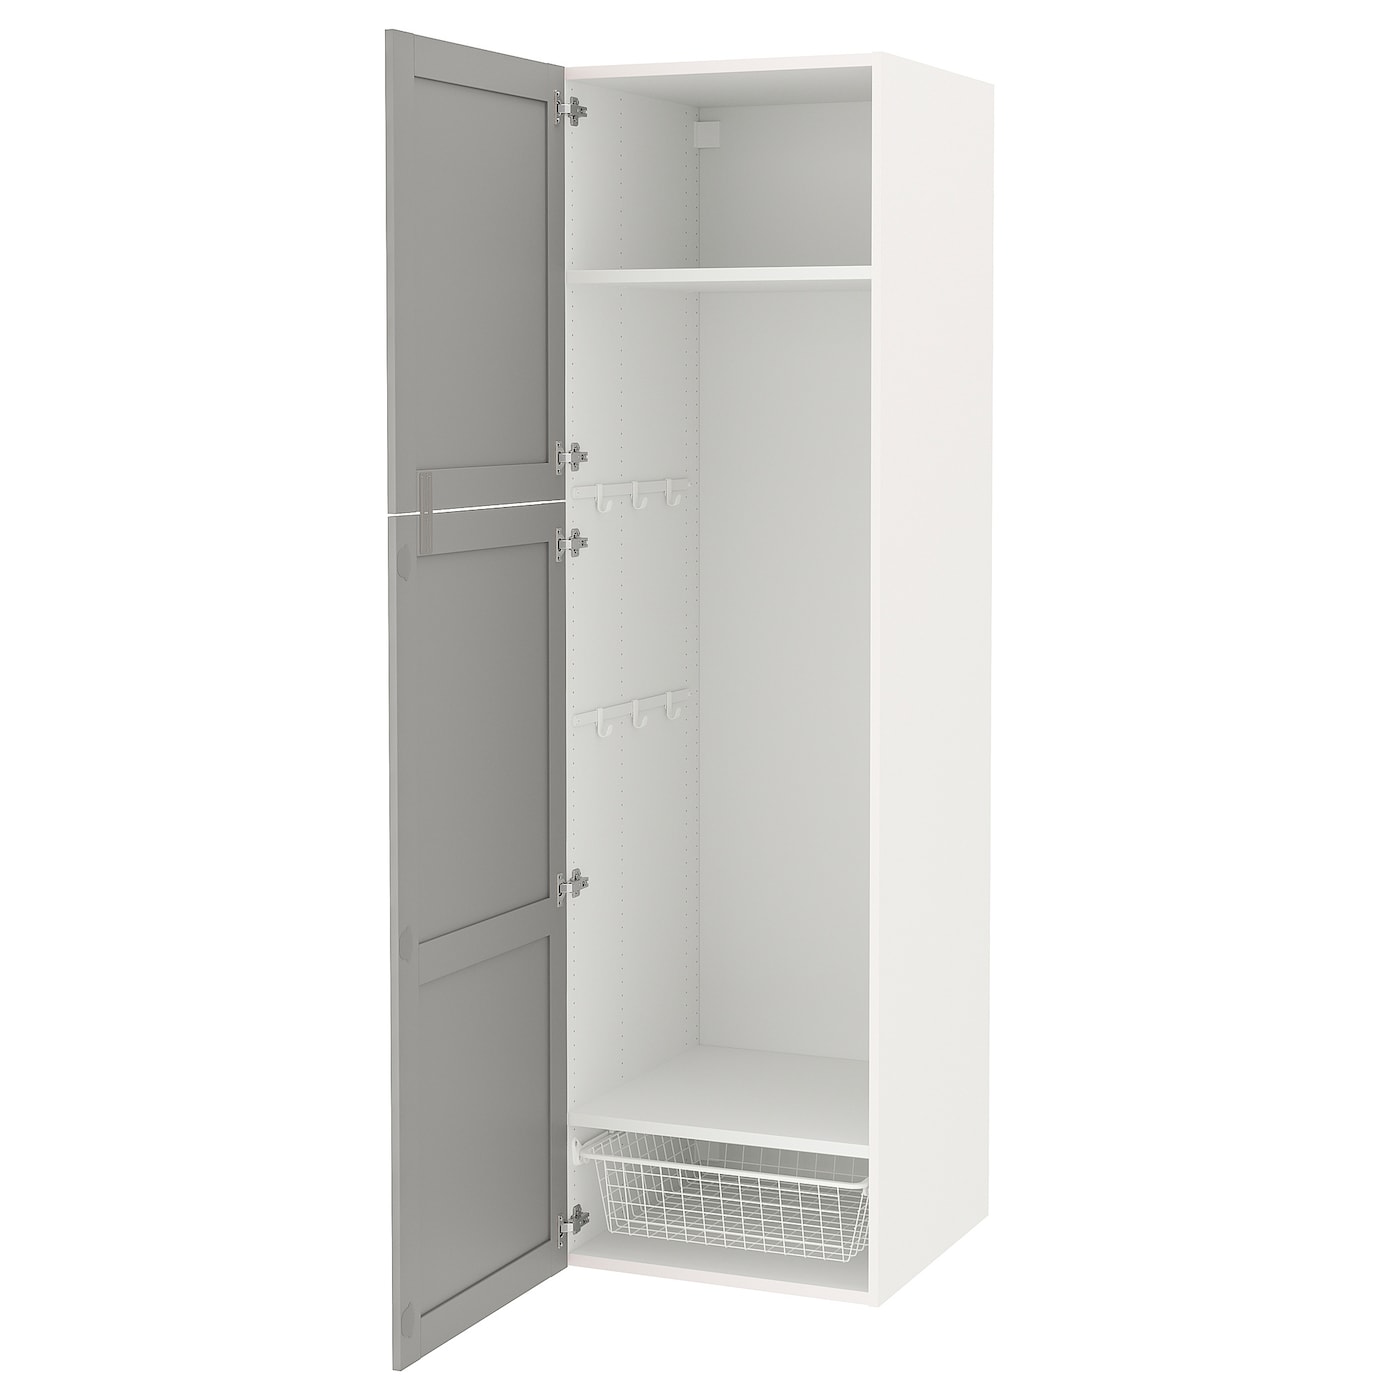 Высокая тумба для ванной - ENHET  IKEA/ЭНХЕТ ИКЕА, 60x62x210 см, белый/серый